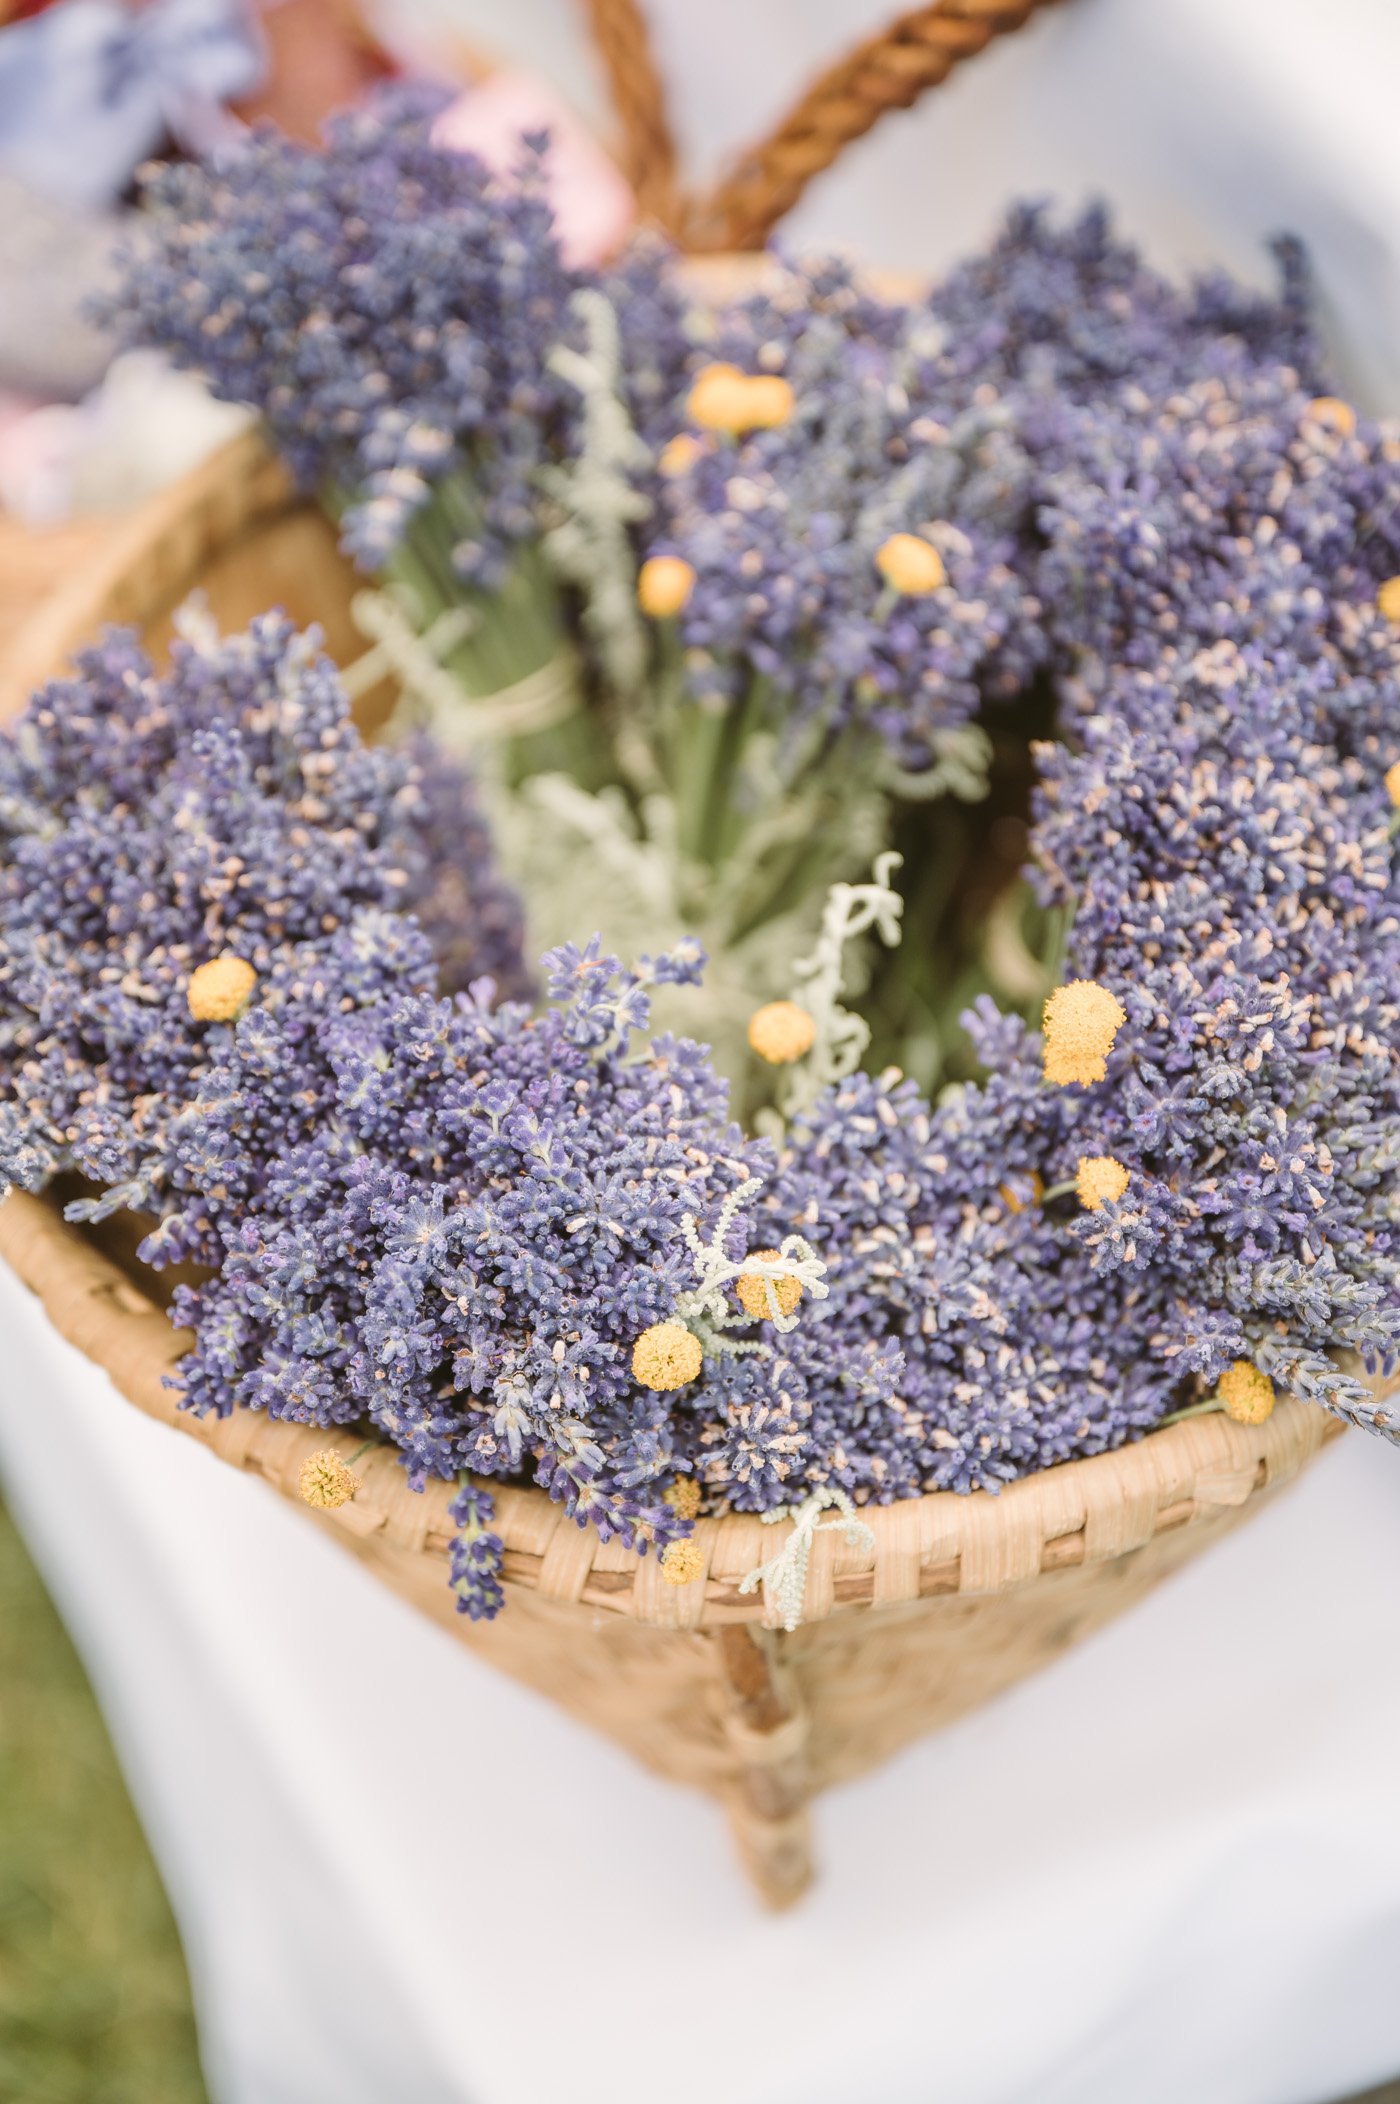 Lavender harvest at Lavender manufacturer Wunsum in Southern Styria